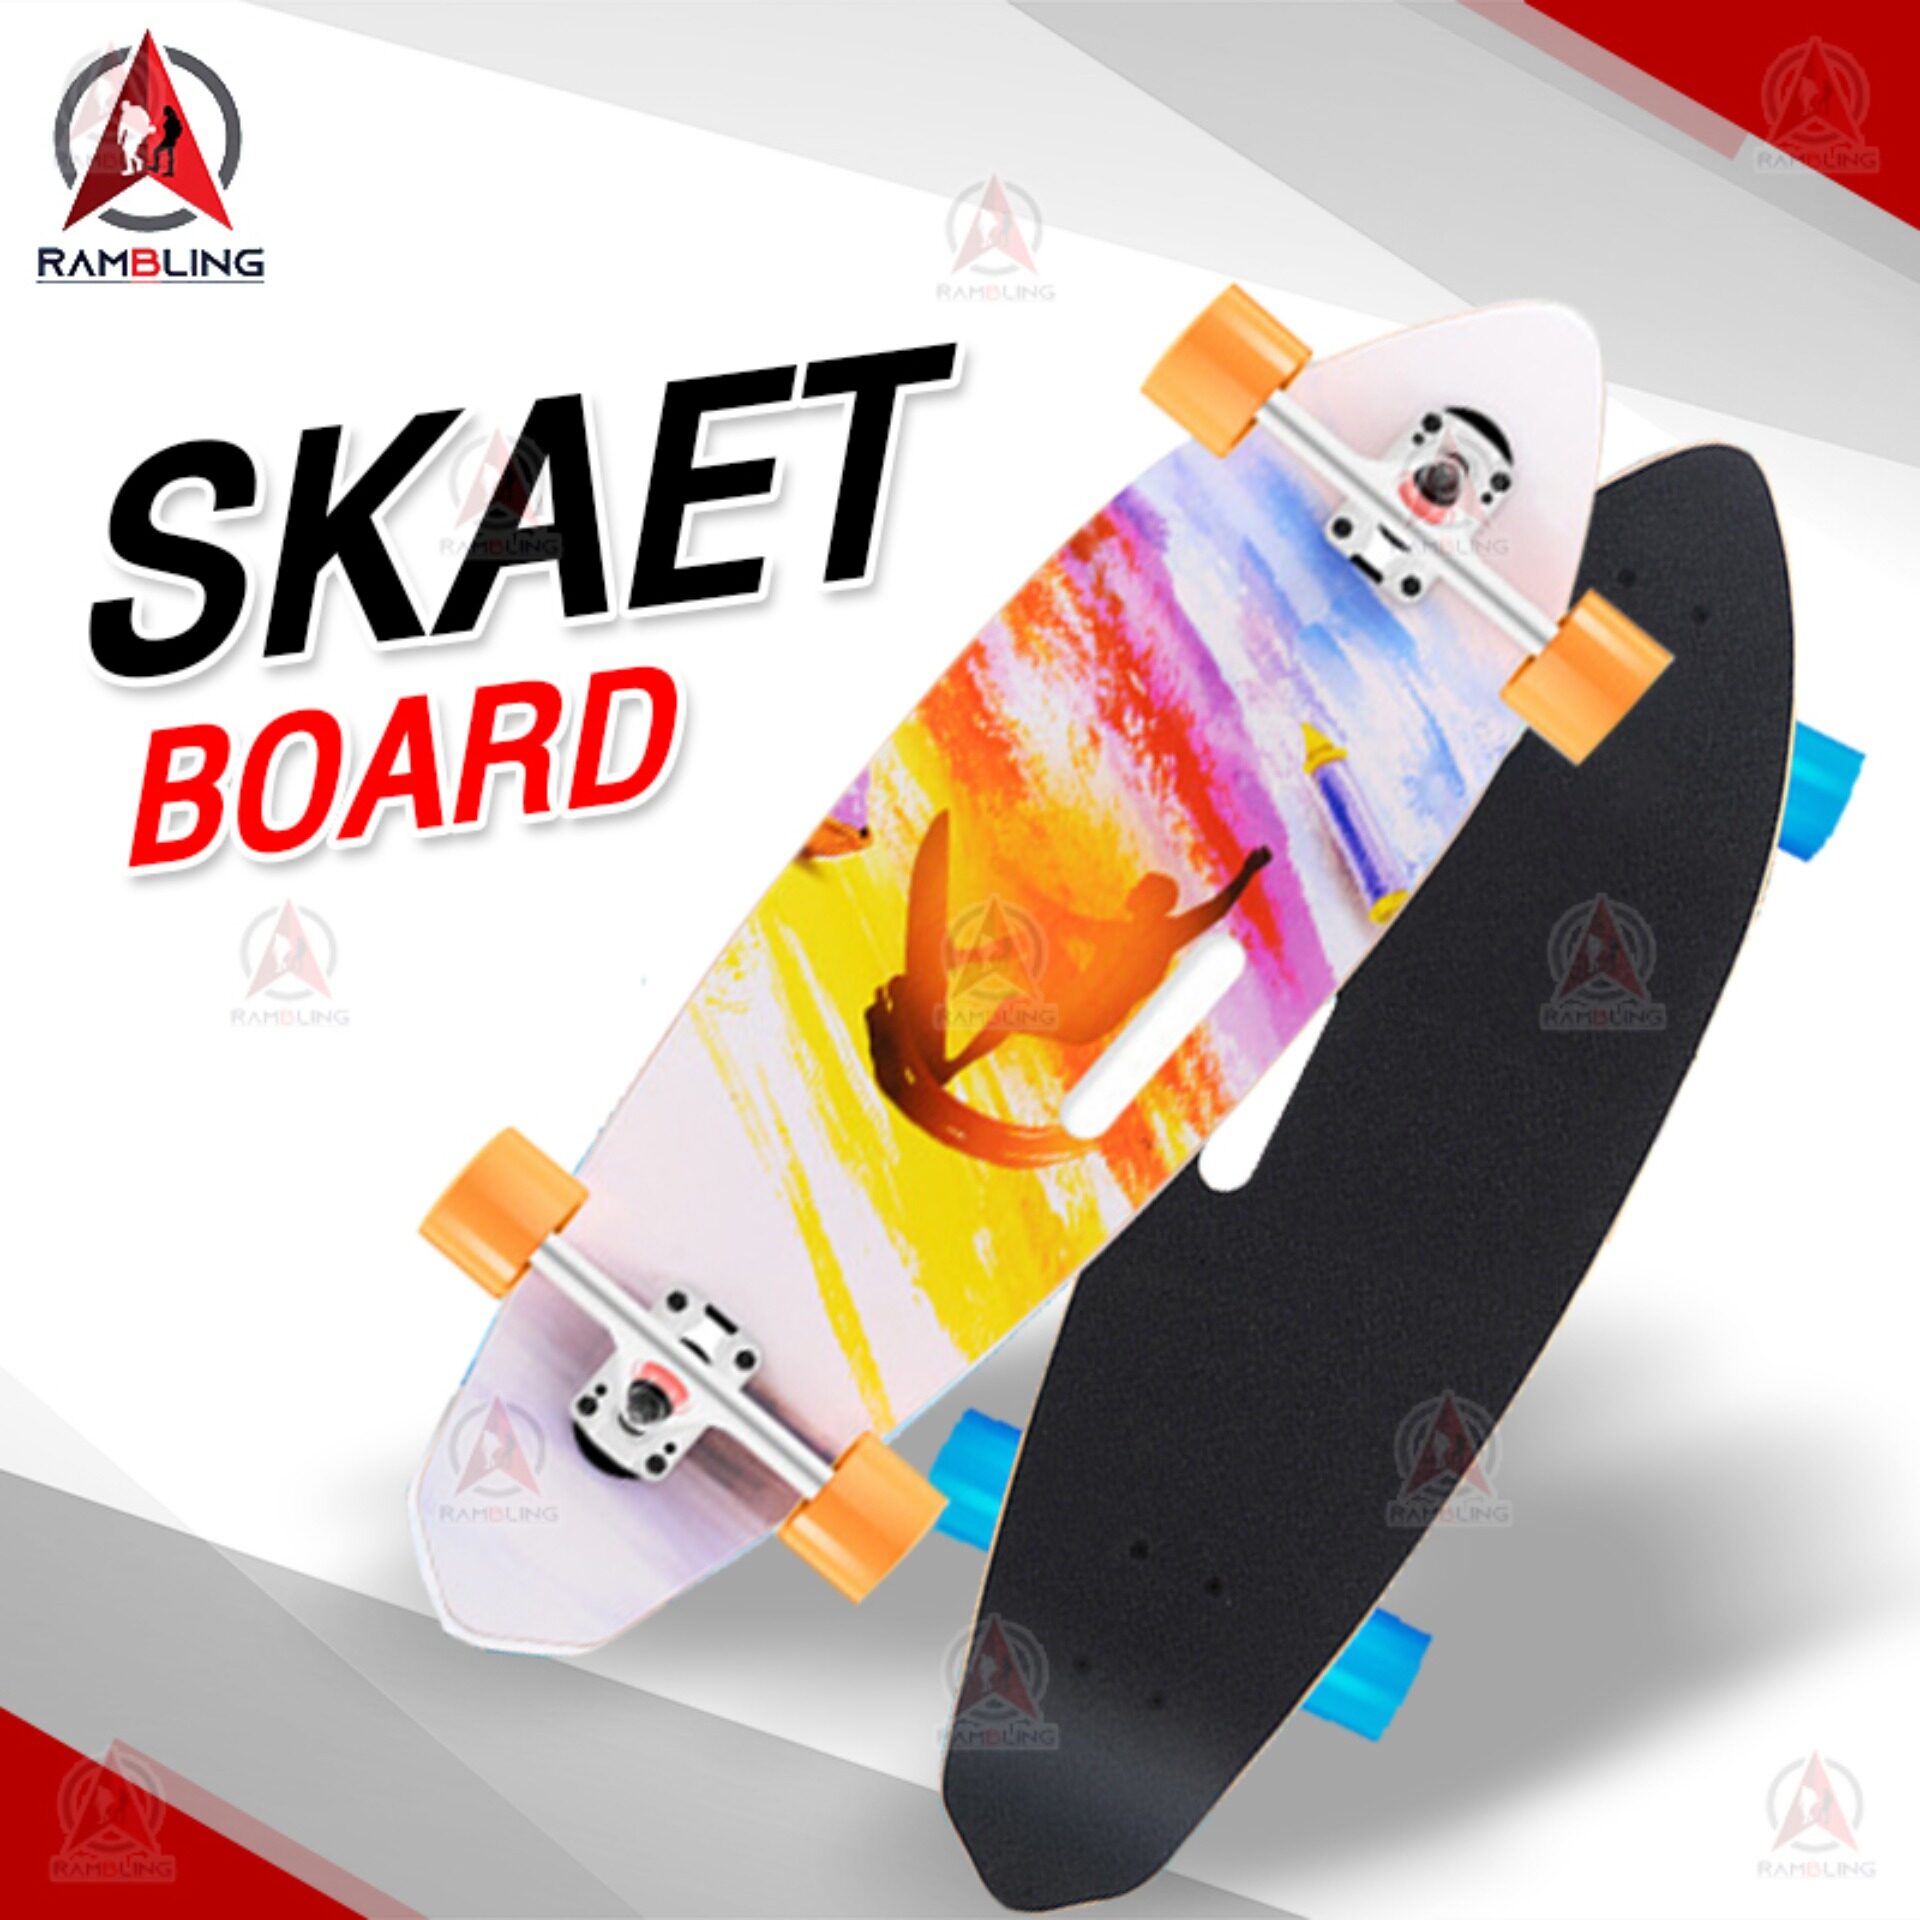 สเก็ตบอร์ด สเก็ตบอร์ด 4 ล้อ skateboard สเก็ต บอร์ด Skateboards Customized สเก็ตบอร์ดแฟชั่น ลายสวย(ลายคนโต้คลื่น)